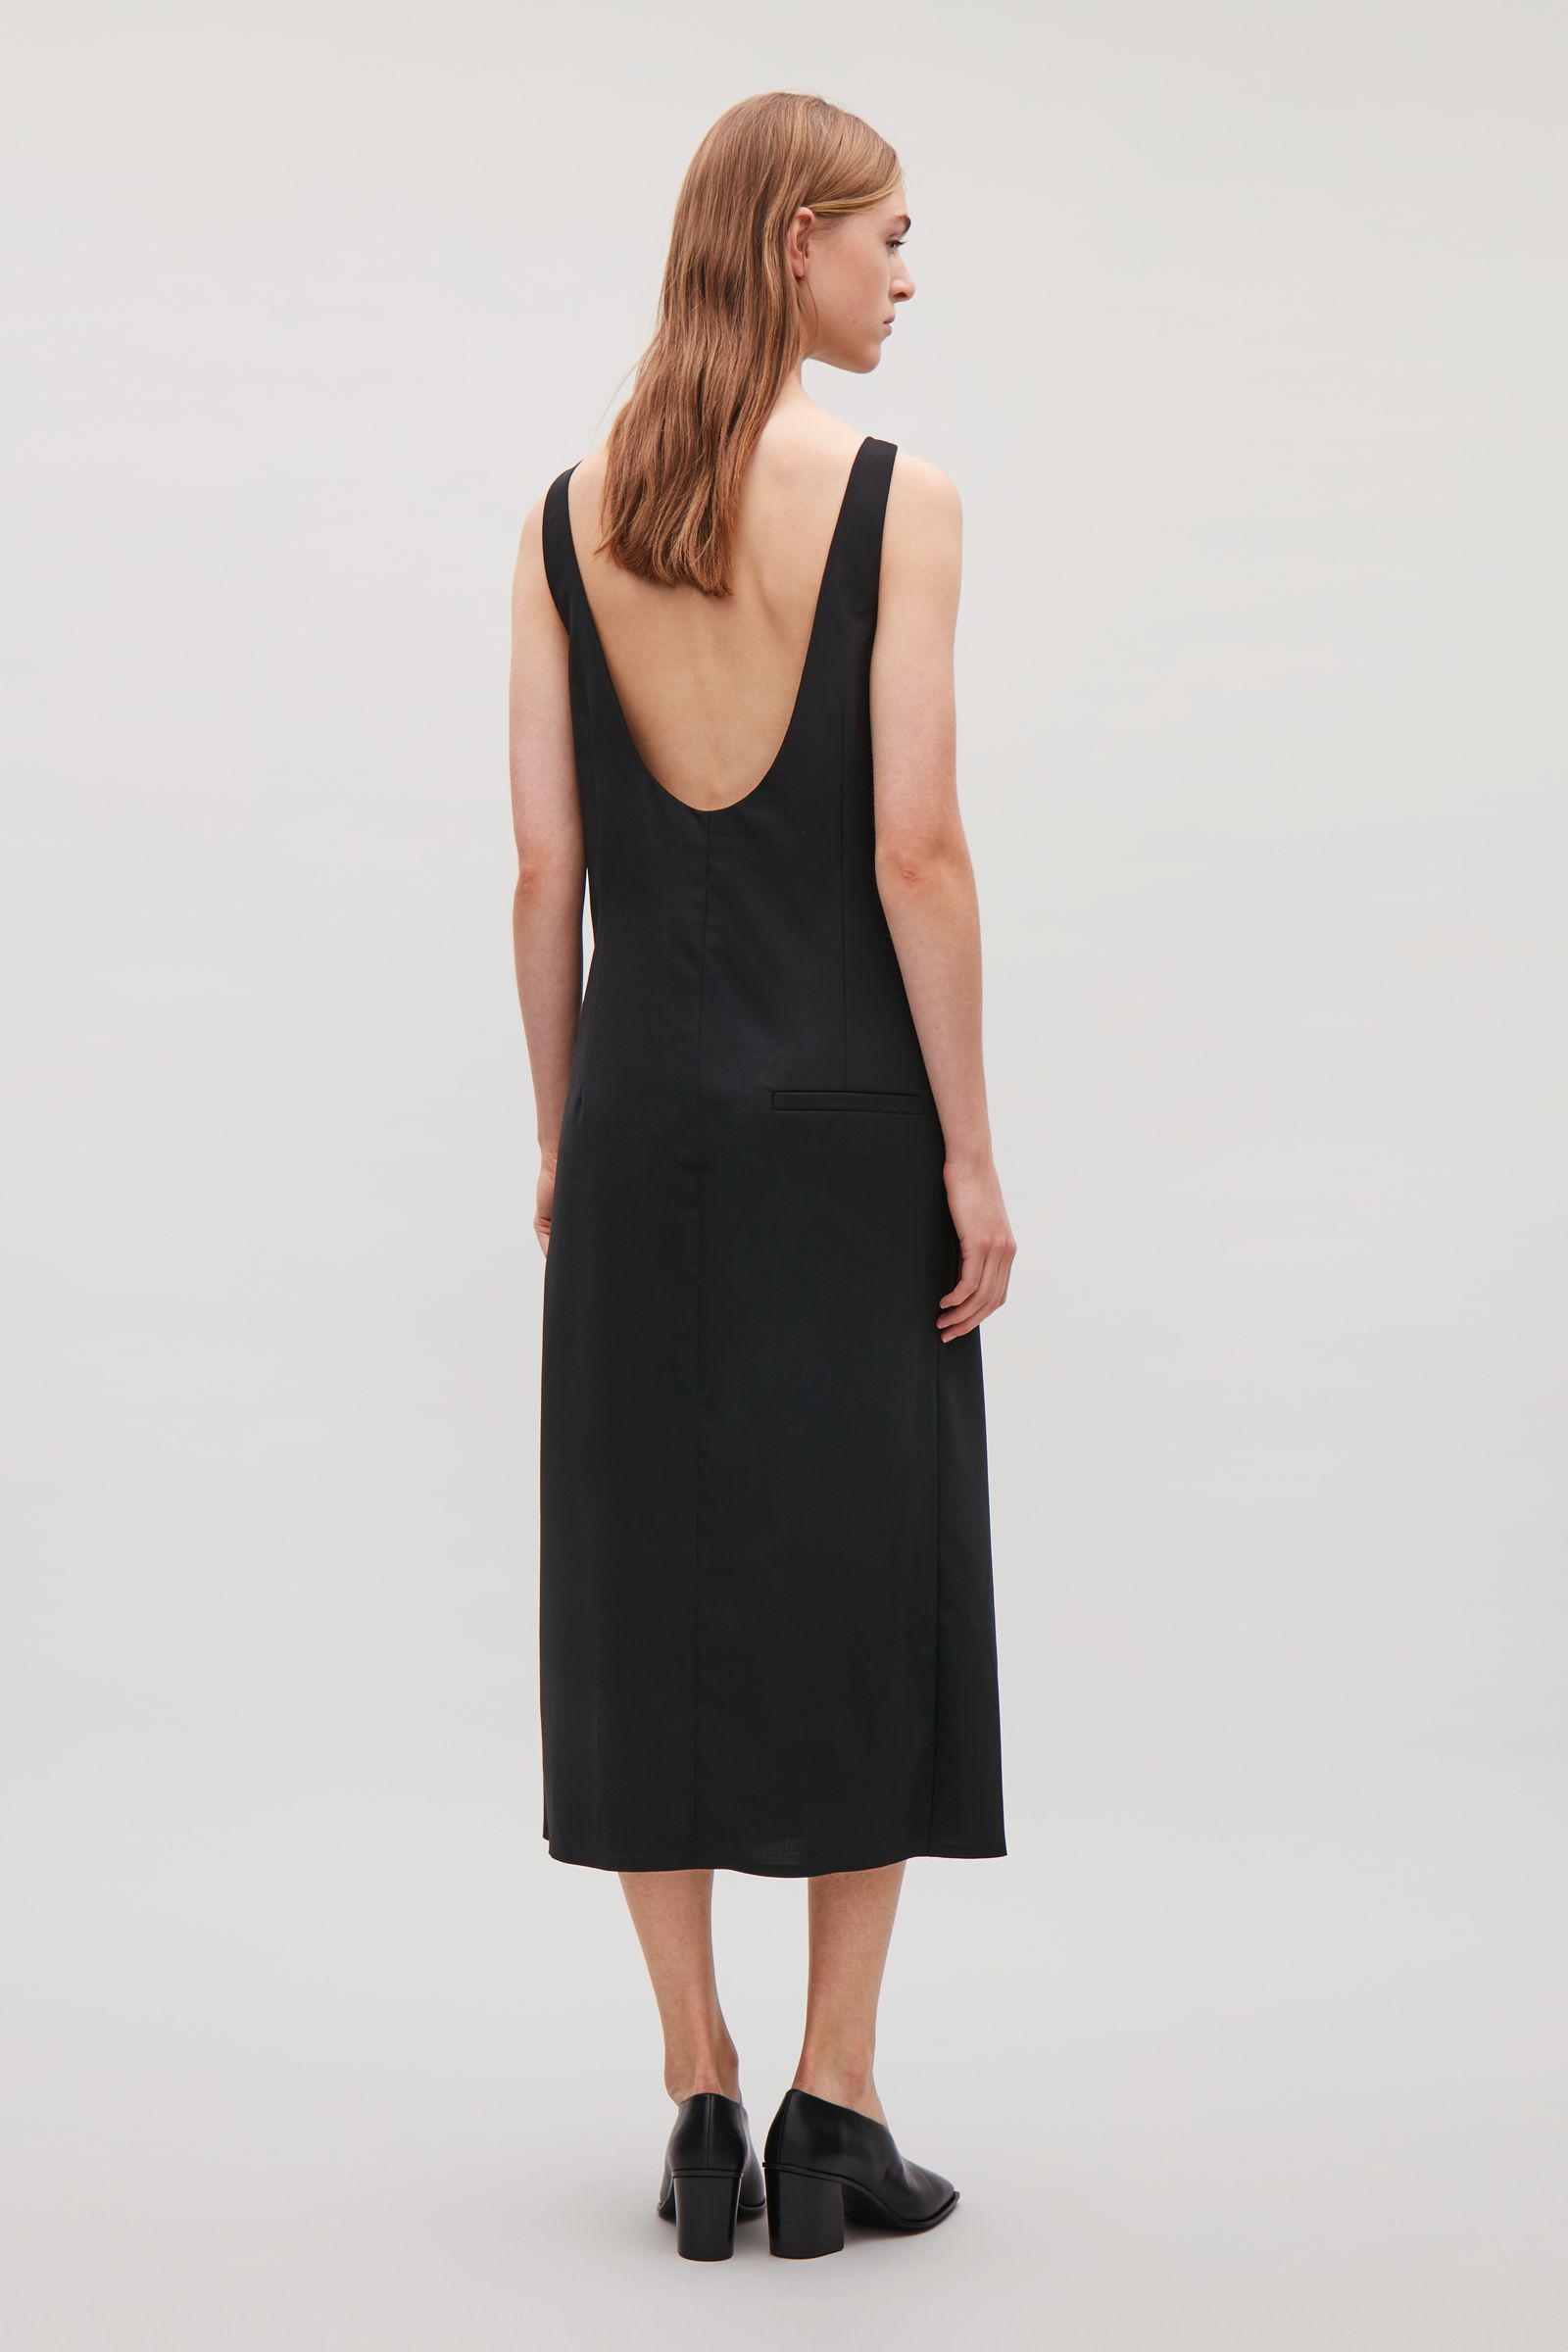 COS Low Scoop-back Dress in Black | Lyst